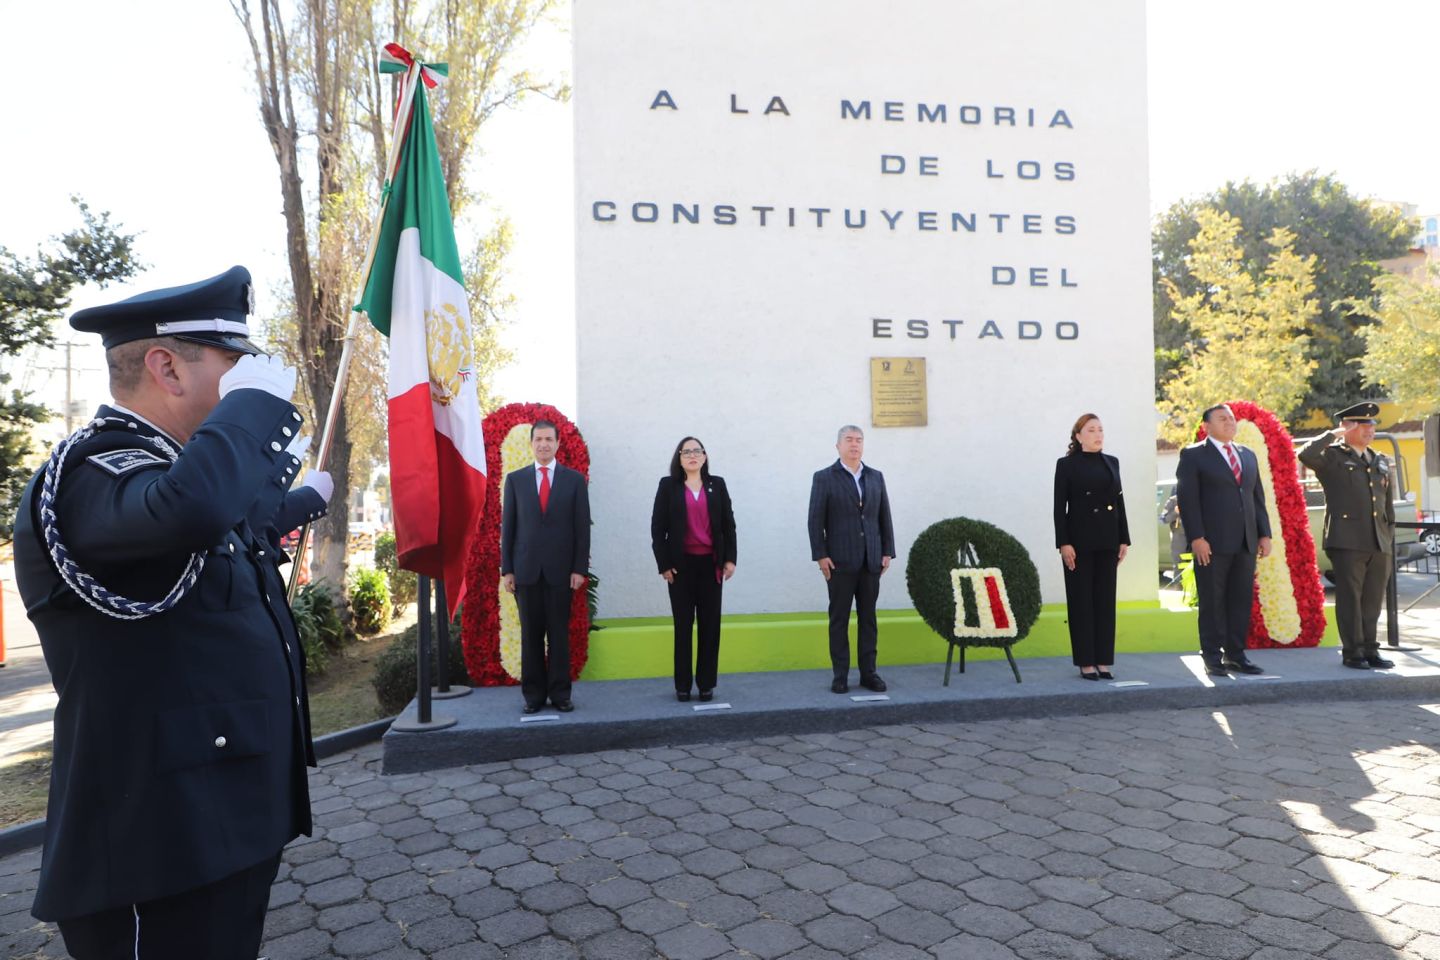 El Gobierno del Estado de México Conmemora el CVII Aniversario de la
 Promulgación de la Constitución Política de los Estados Unidos Mexicanos
